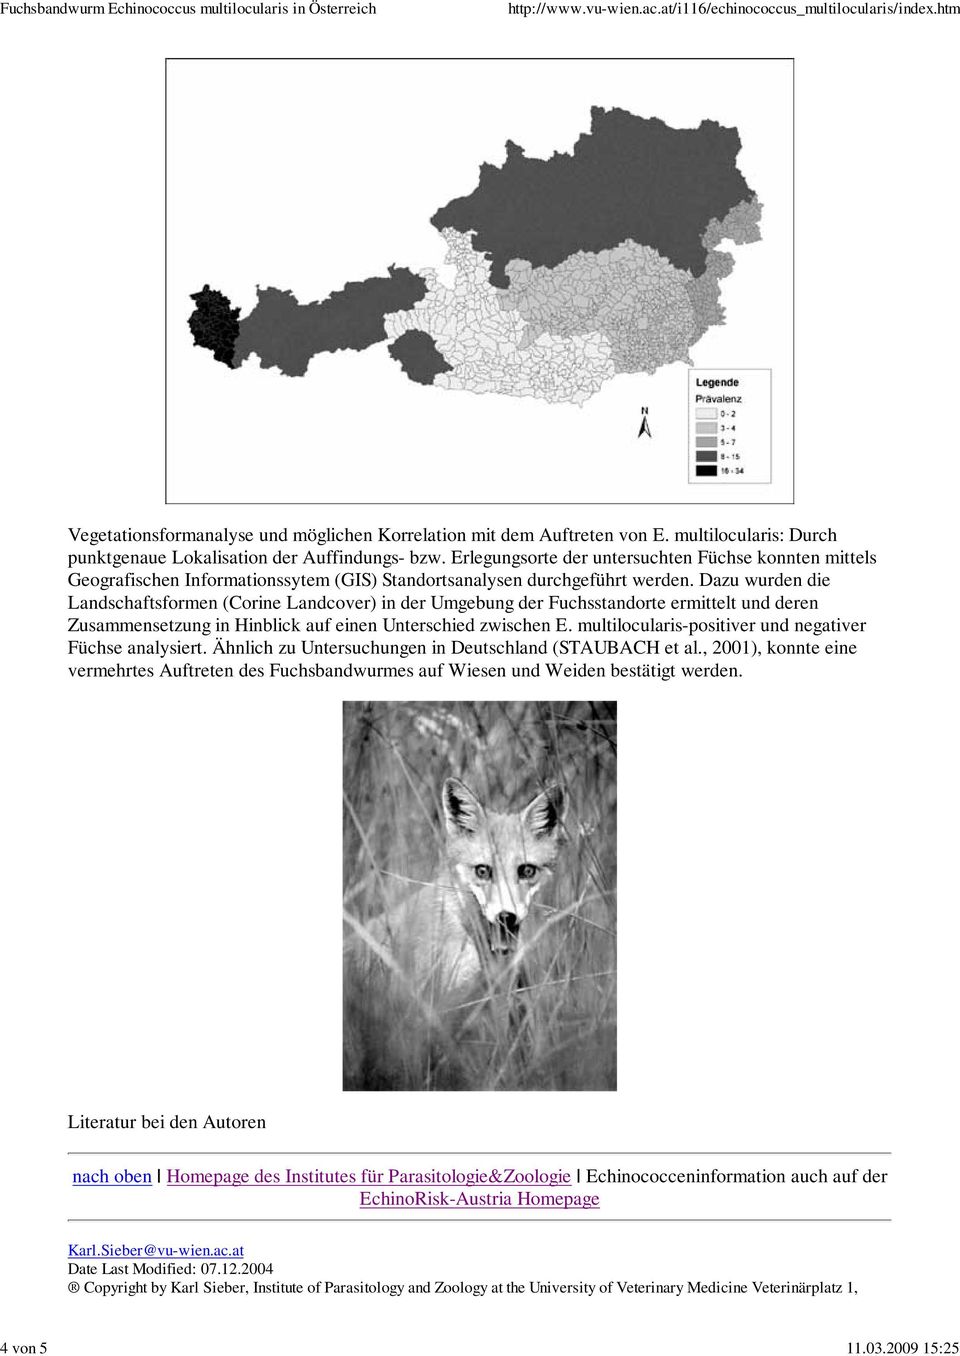 Dazu wurden die Landschaftsformen (Corine Landcover) in der Umgebung der Fuchsstandorte ermittelt und deren Zusammensetzung in Hinblick auf einen Unterschied zwischen E.